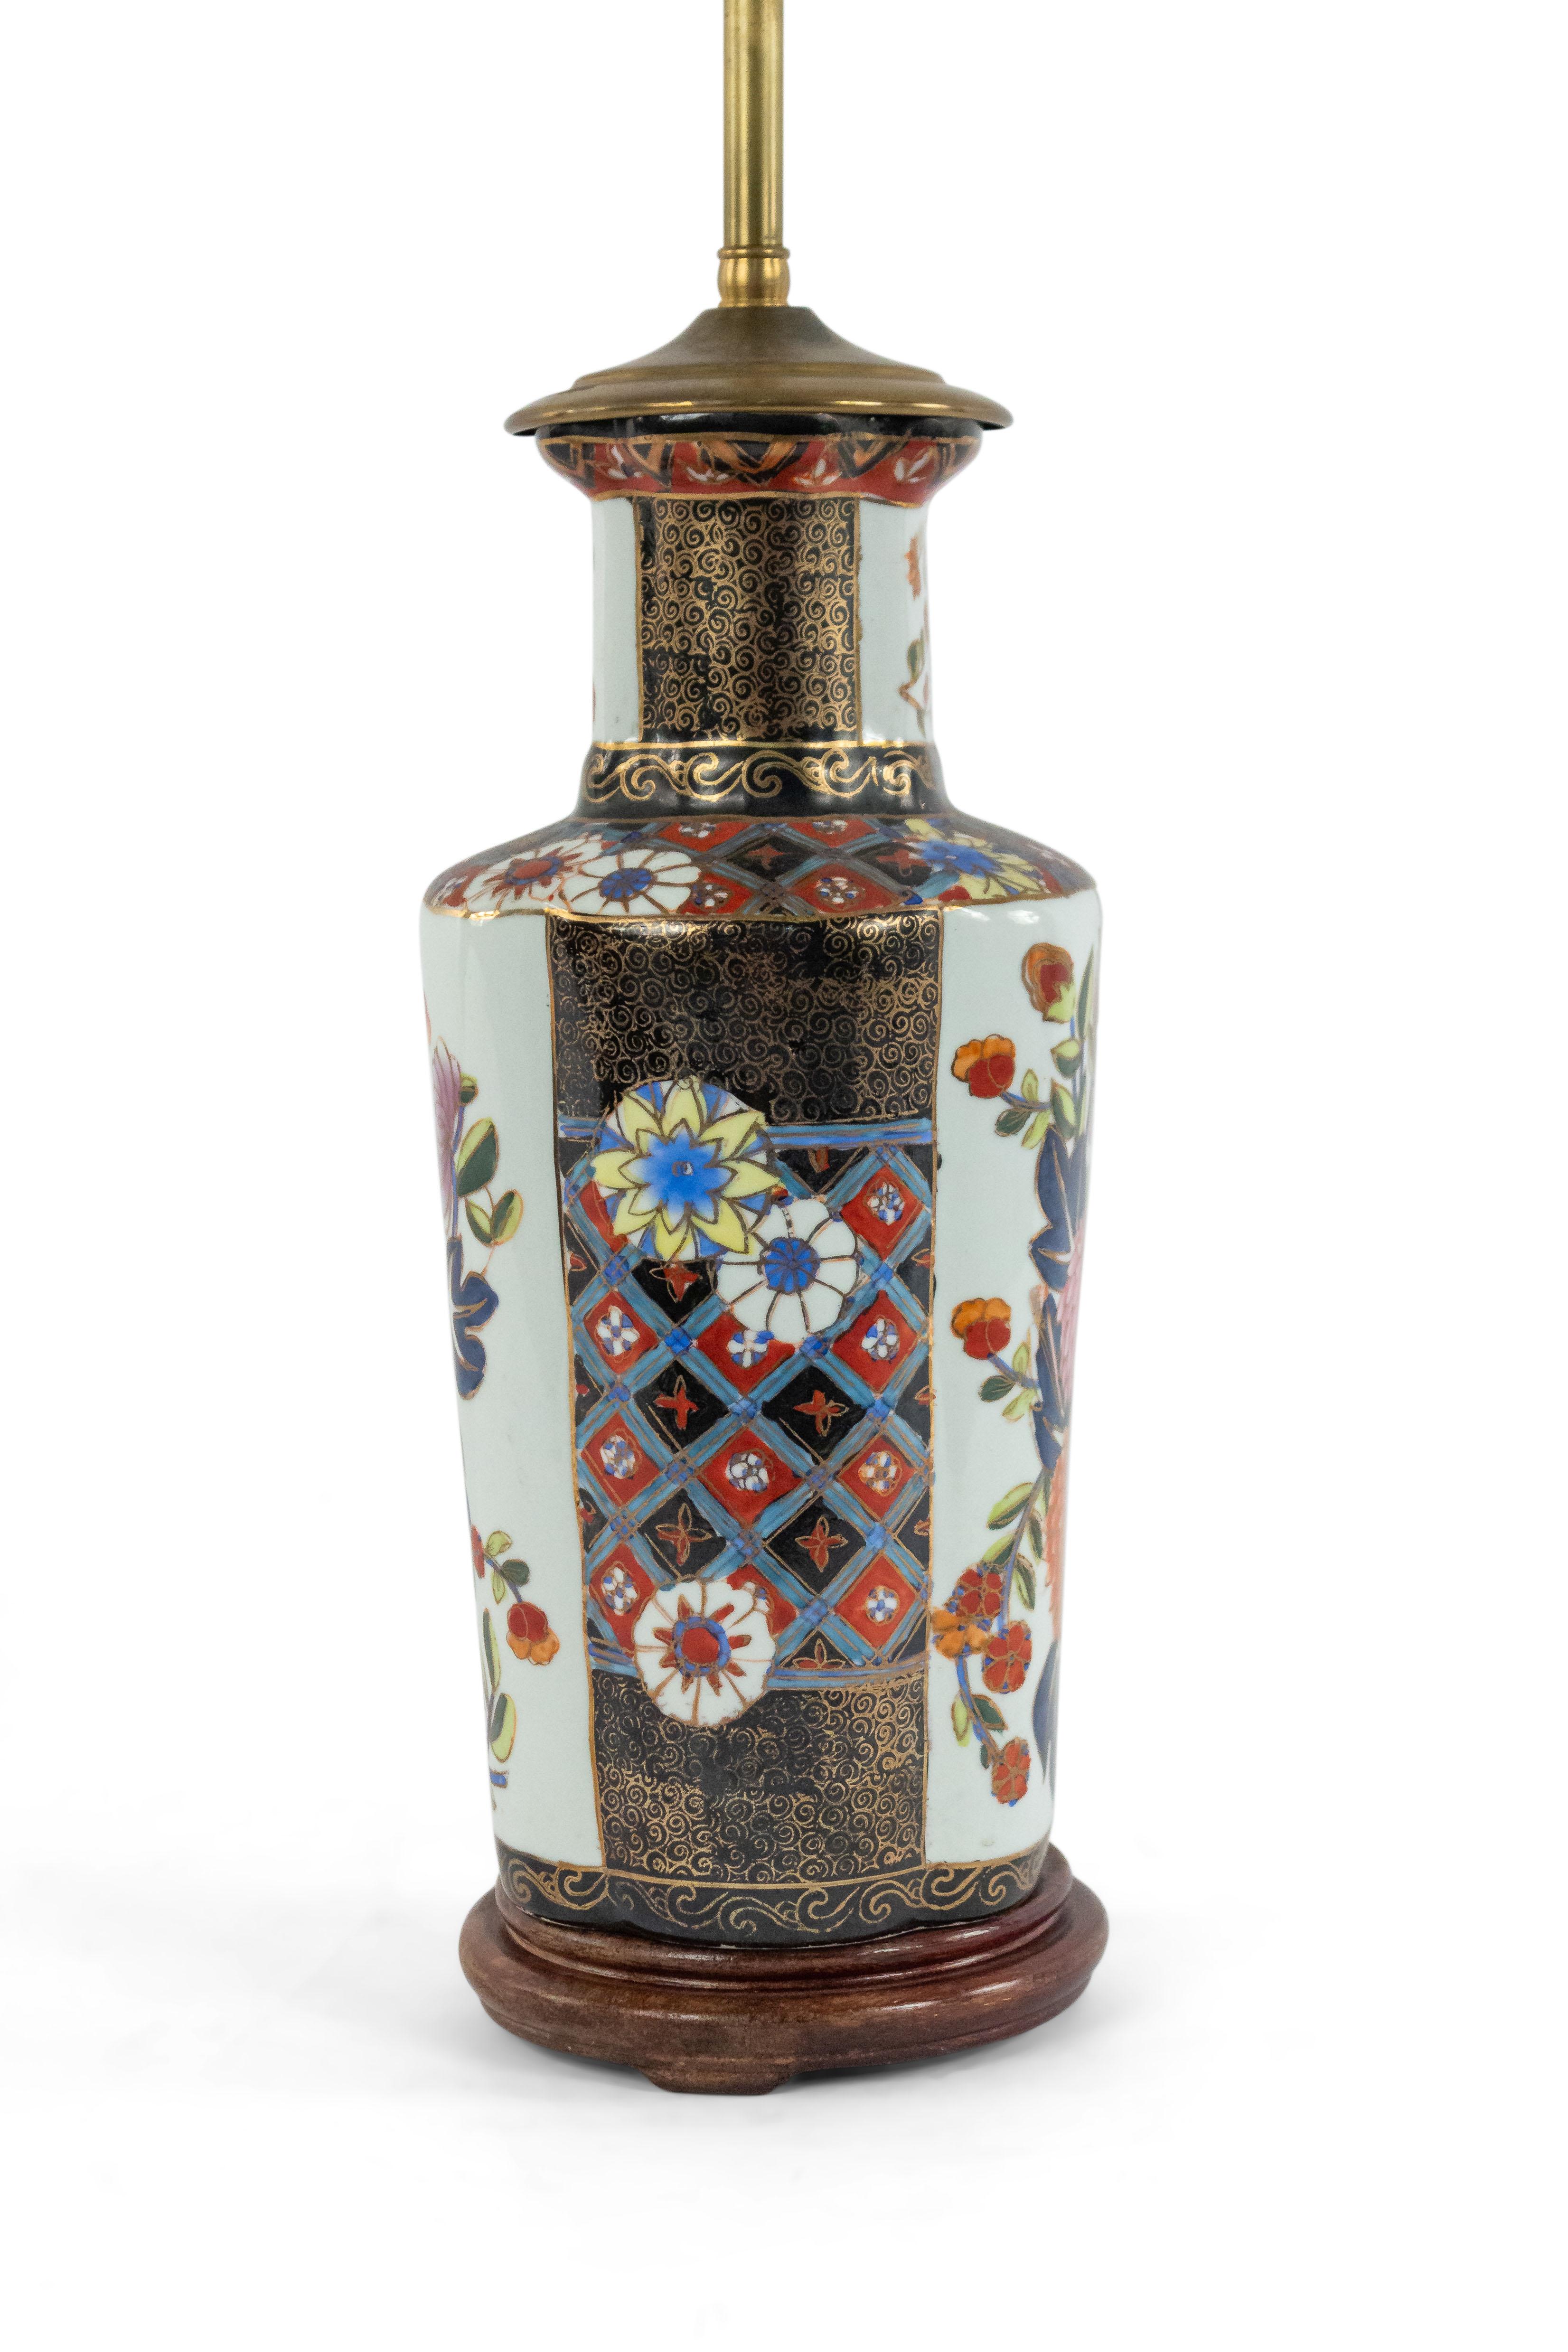 Lampe de table en porcelaine de style asiatique chinois avec décoration florale de style Imari sur base ronde en bois.